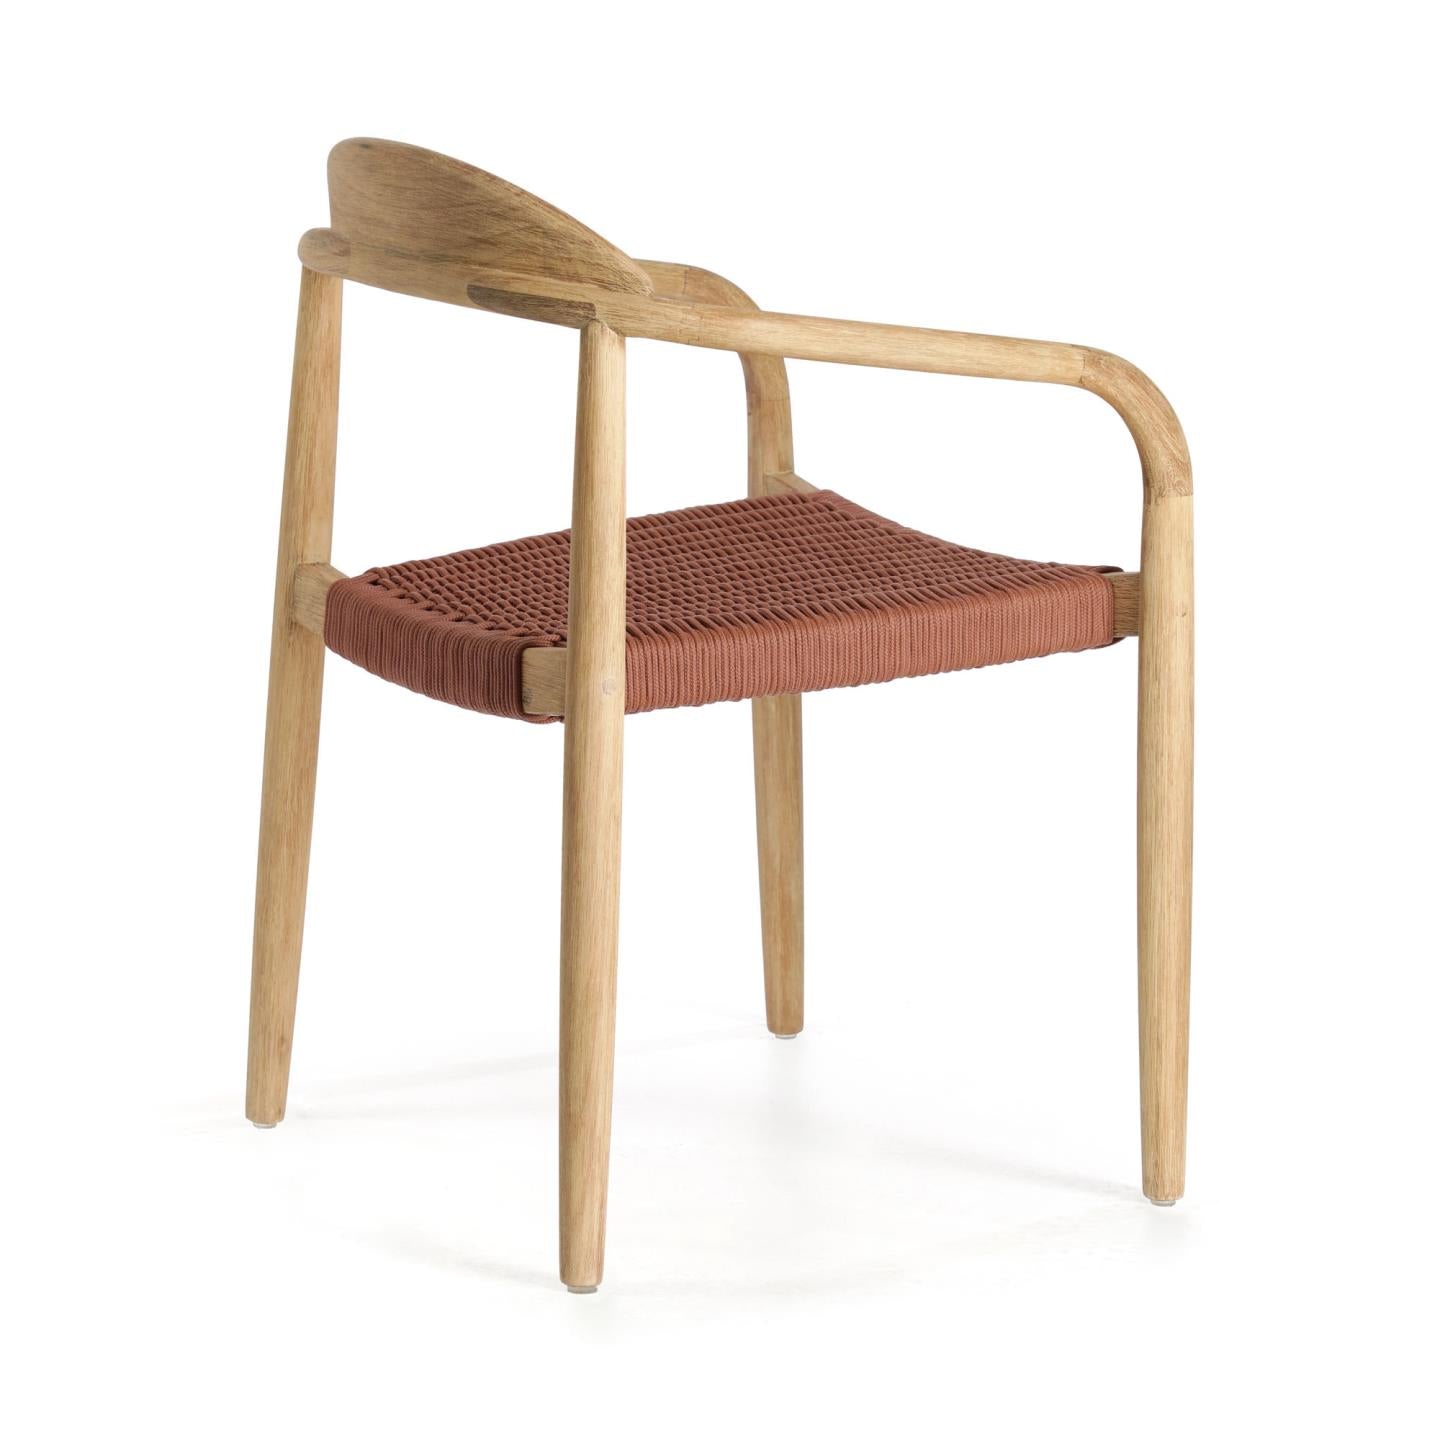 Nina egymásba rakható szék tömör akácfából, terrakotta kötélből készült ülőfelülettel